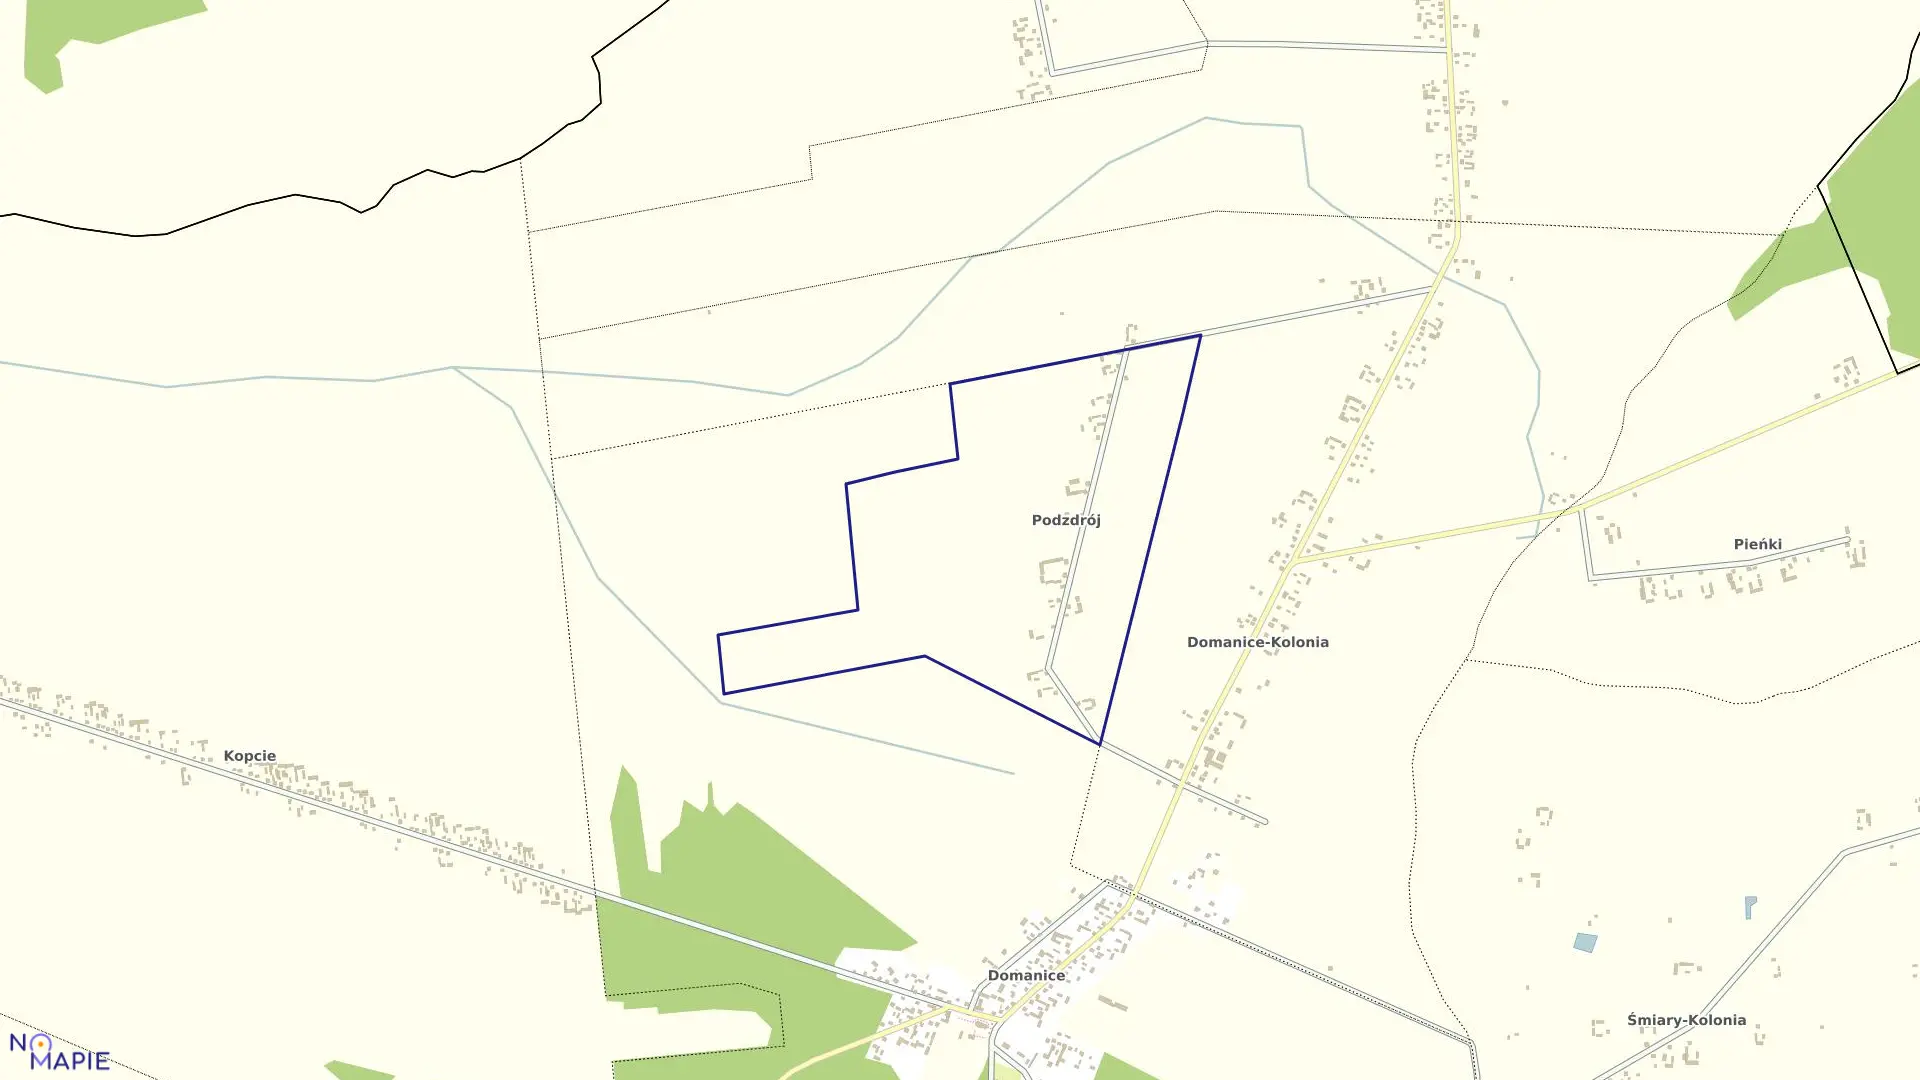 Mapa obrębu PODZDRÓJ w gminie Domanice